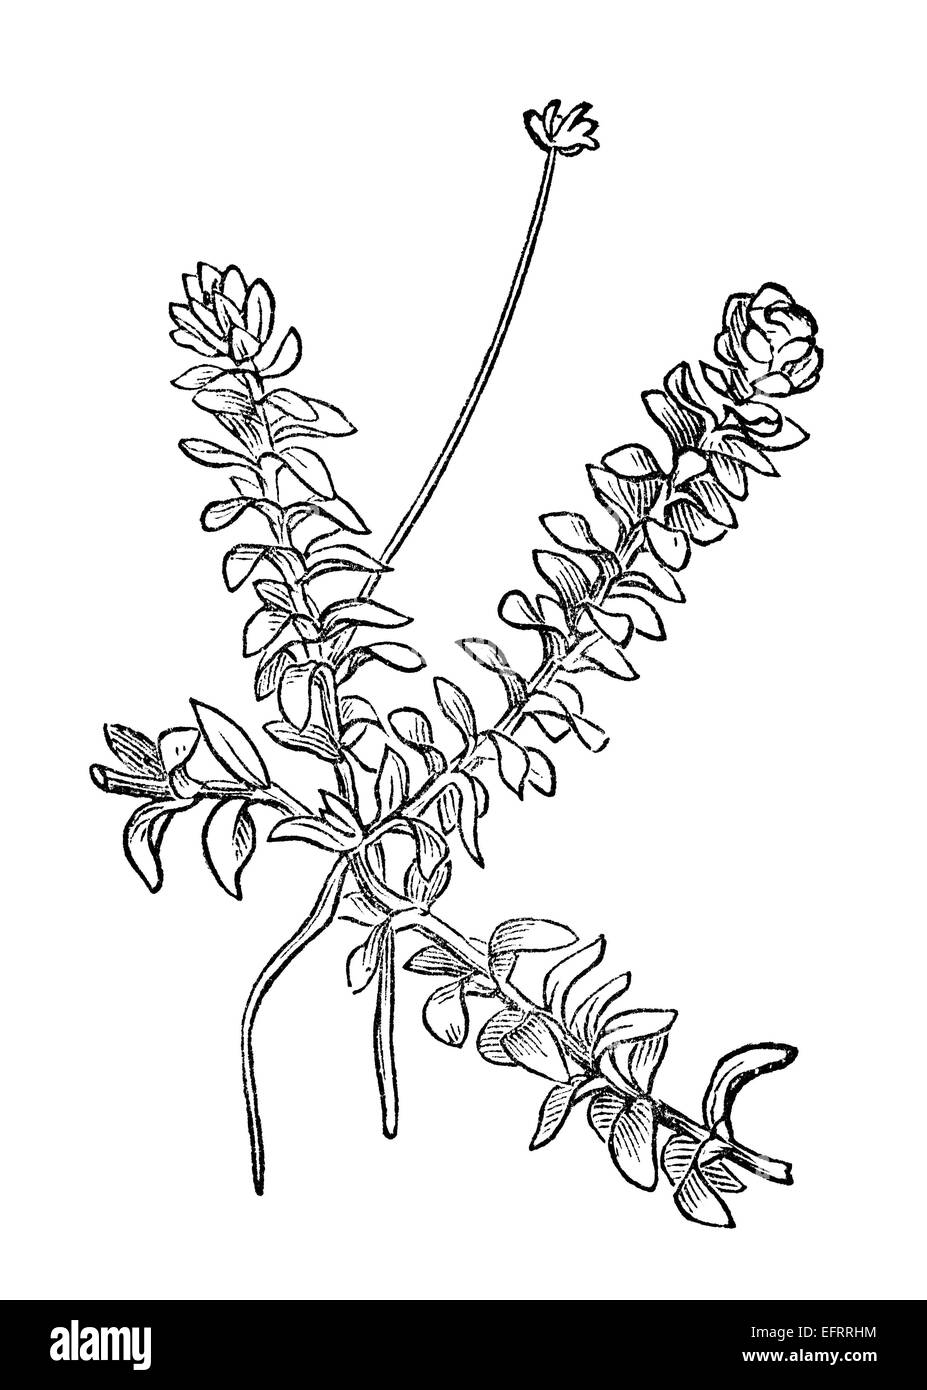 La gravure de l'époque victorienne d'un anacharis plante. Image restaurée numériquement à partir d'un milieu du xixe siècle l'encyclopédie. Banque D'Images